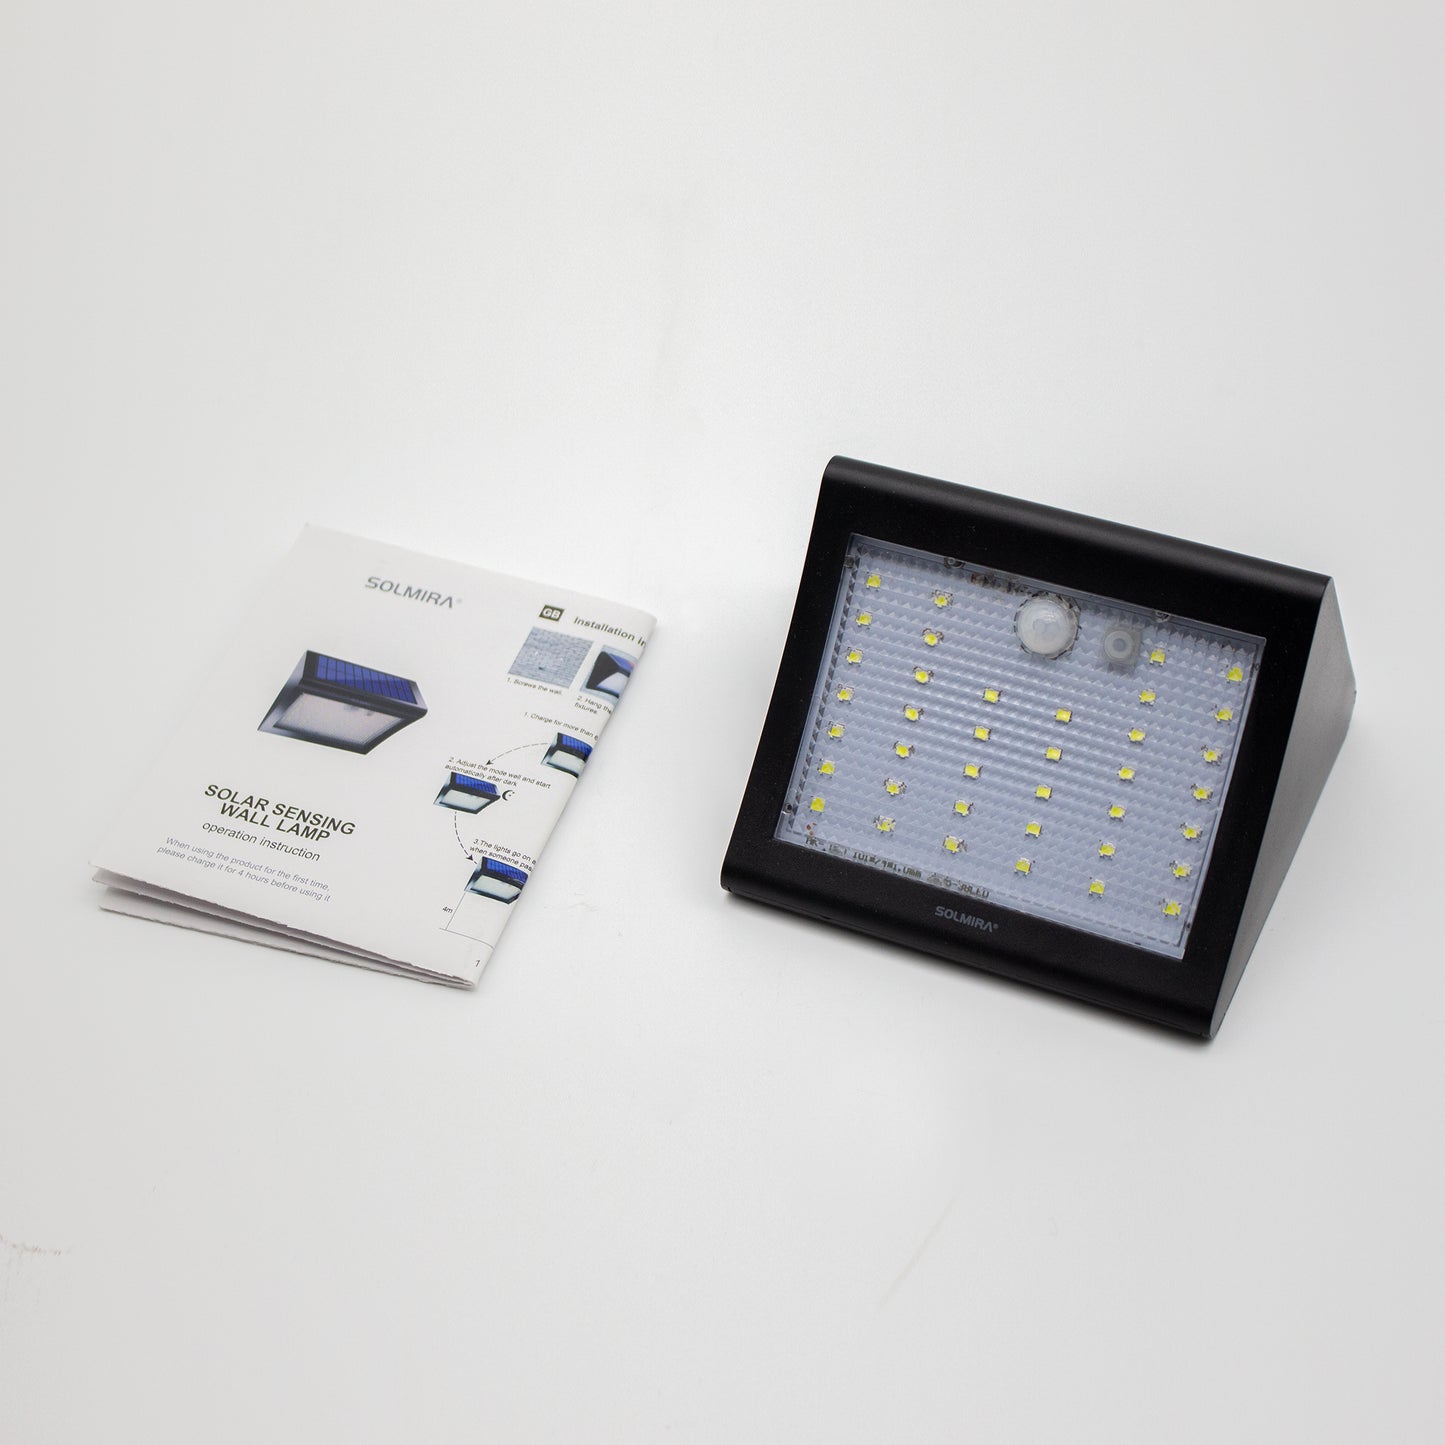 SOLMIRA® Luz Solar LED Exterior de Pared, Pack de 2 Apliques de 38 LEDs, 3 Modos, Certificado CE y RoHS